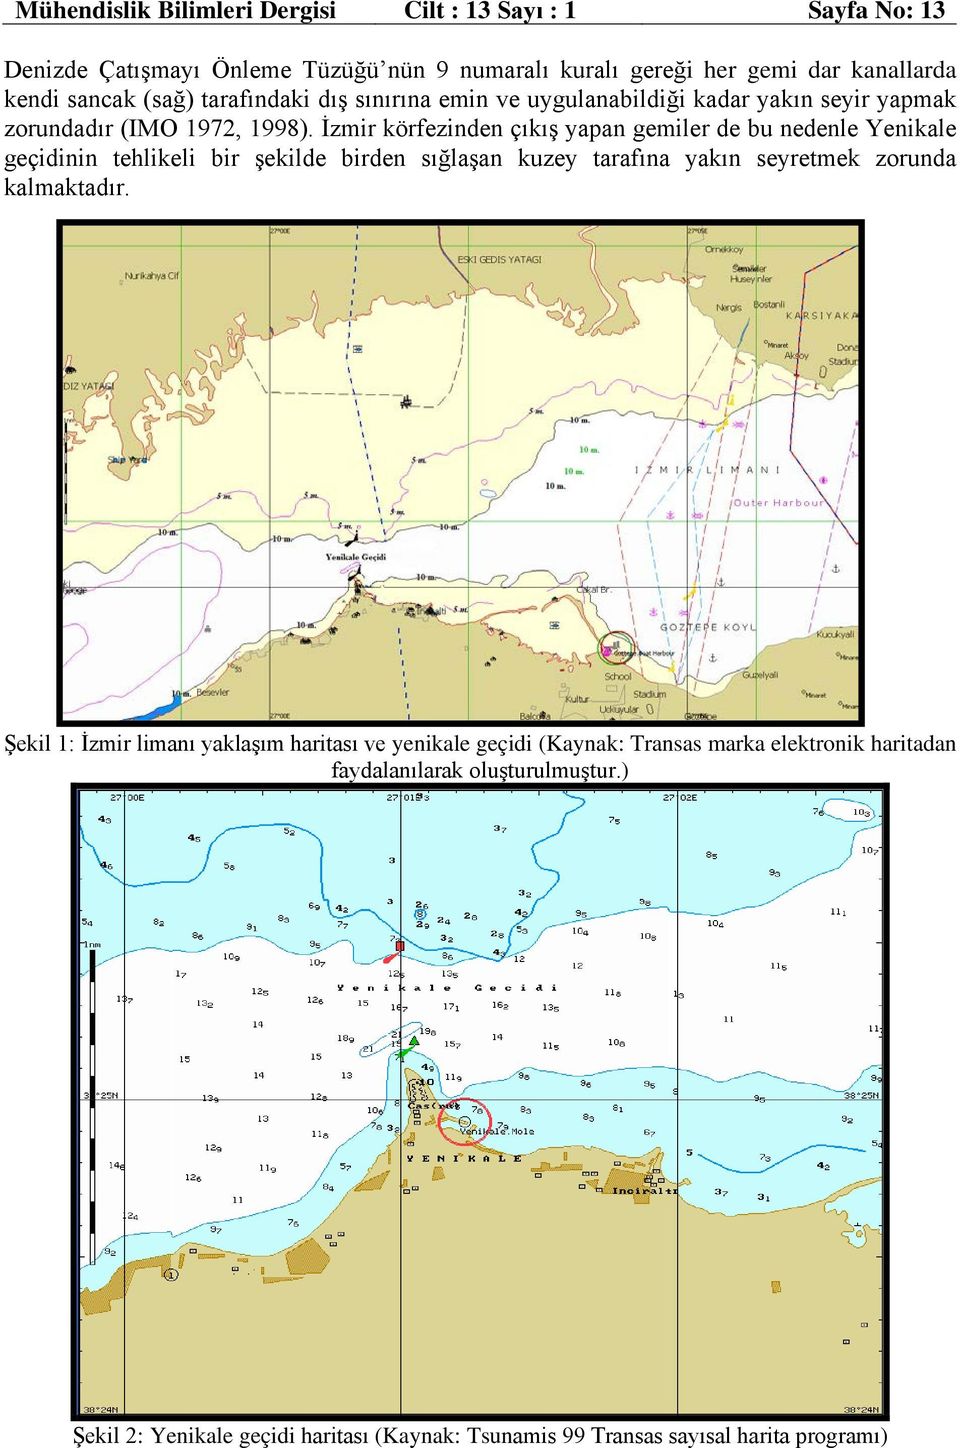 İzmir körfezinden çıkış yapan gemiler de bu nedenle Yenikale geçidinin tehlikeli bir şekilde birden sığlaşan kuzey tarafına yakın seyretmek zorunda kalmaktadır. - 10 m.